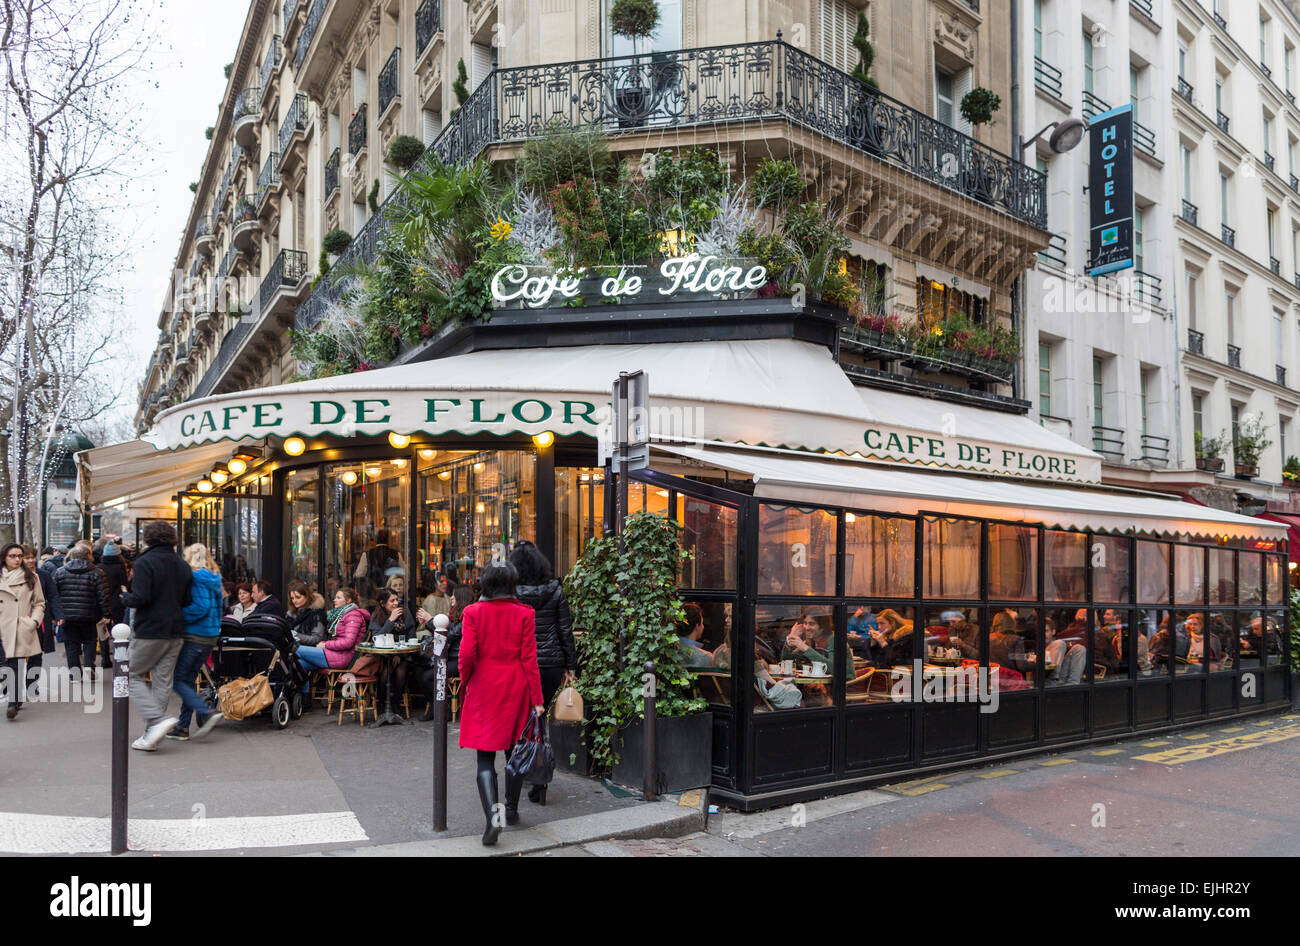 Cafe de Flore exterior, Paris, France Stock Photo